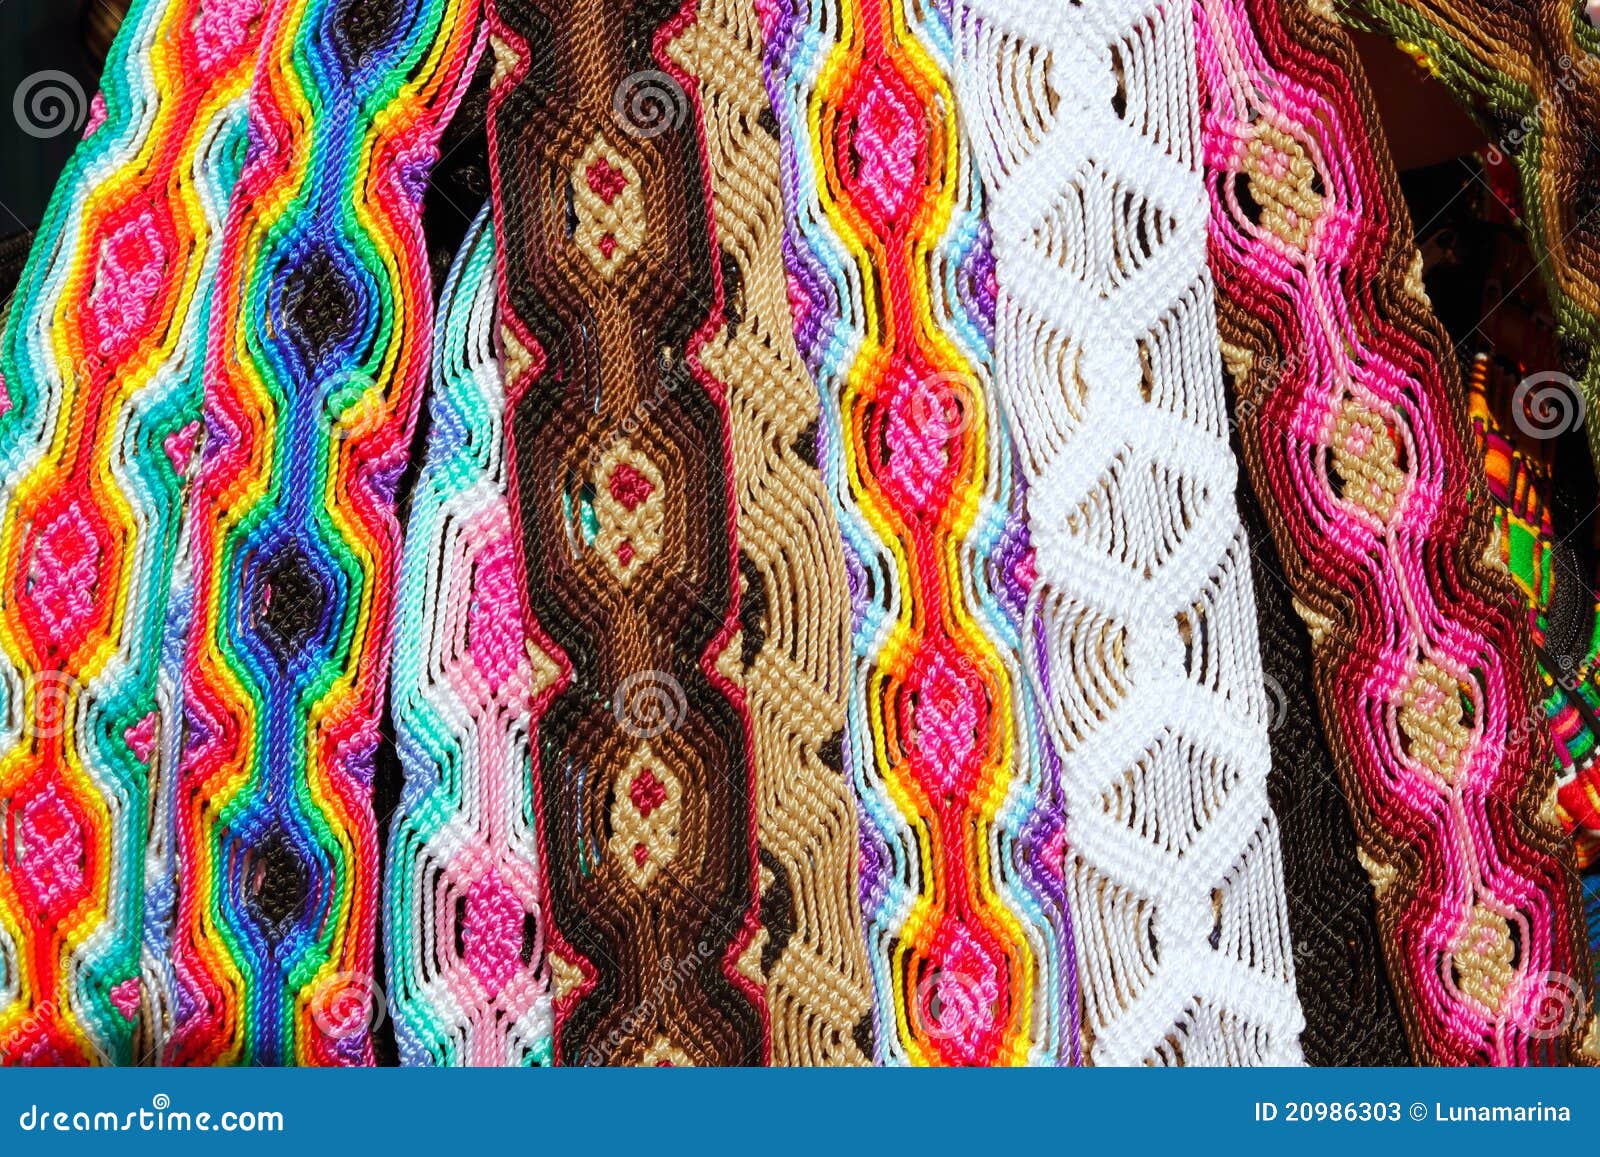 chiapas mexico handcrafts belts colorful bracelets